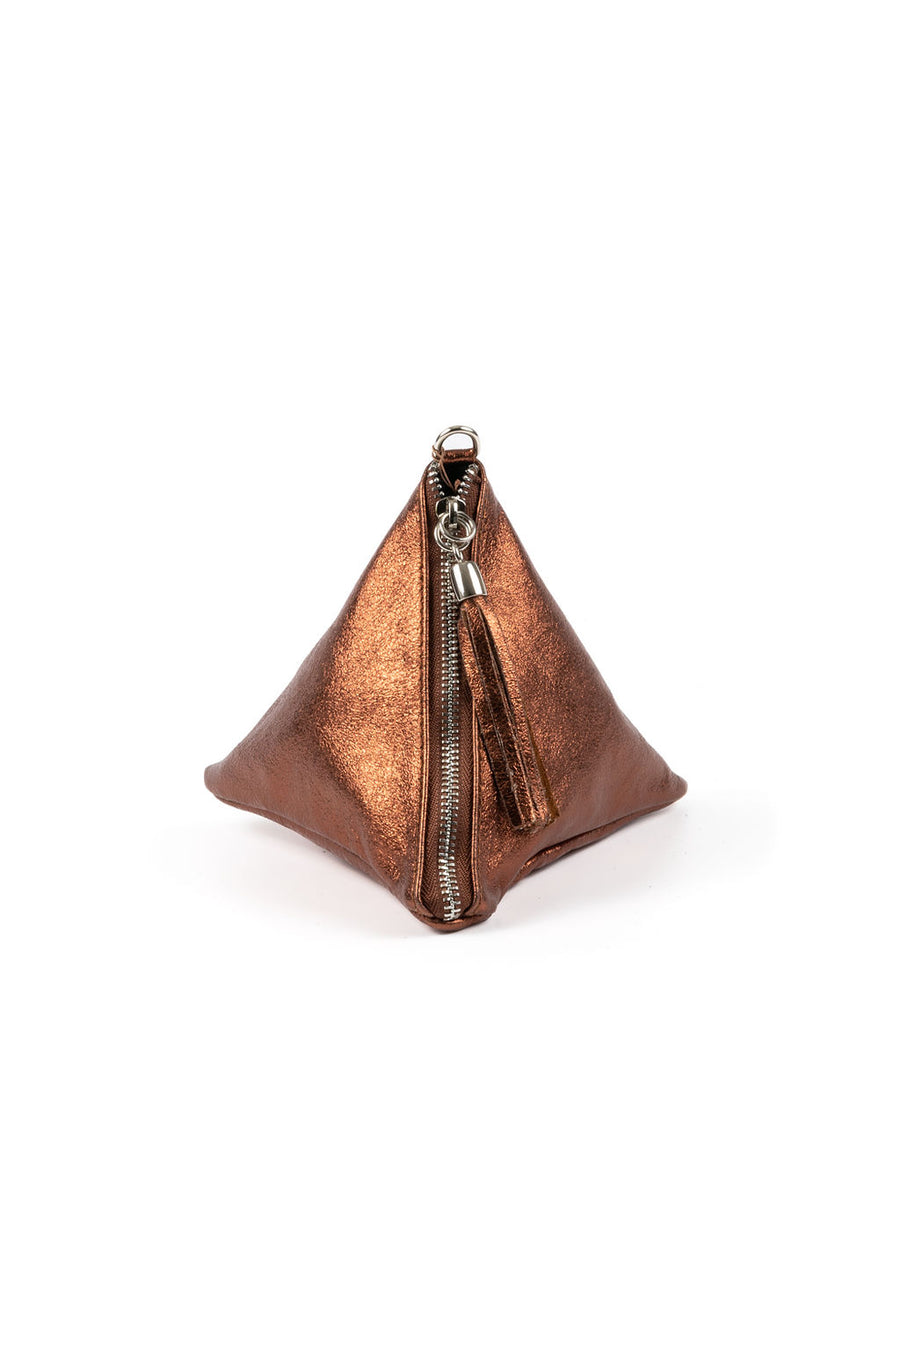 IL GIGLIO Pyramid Leather Bag